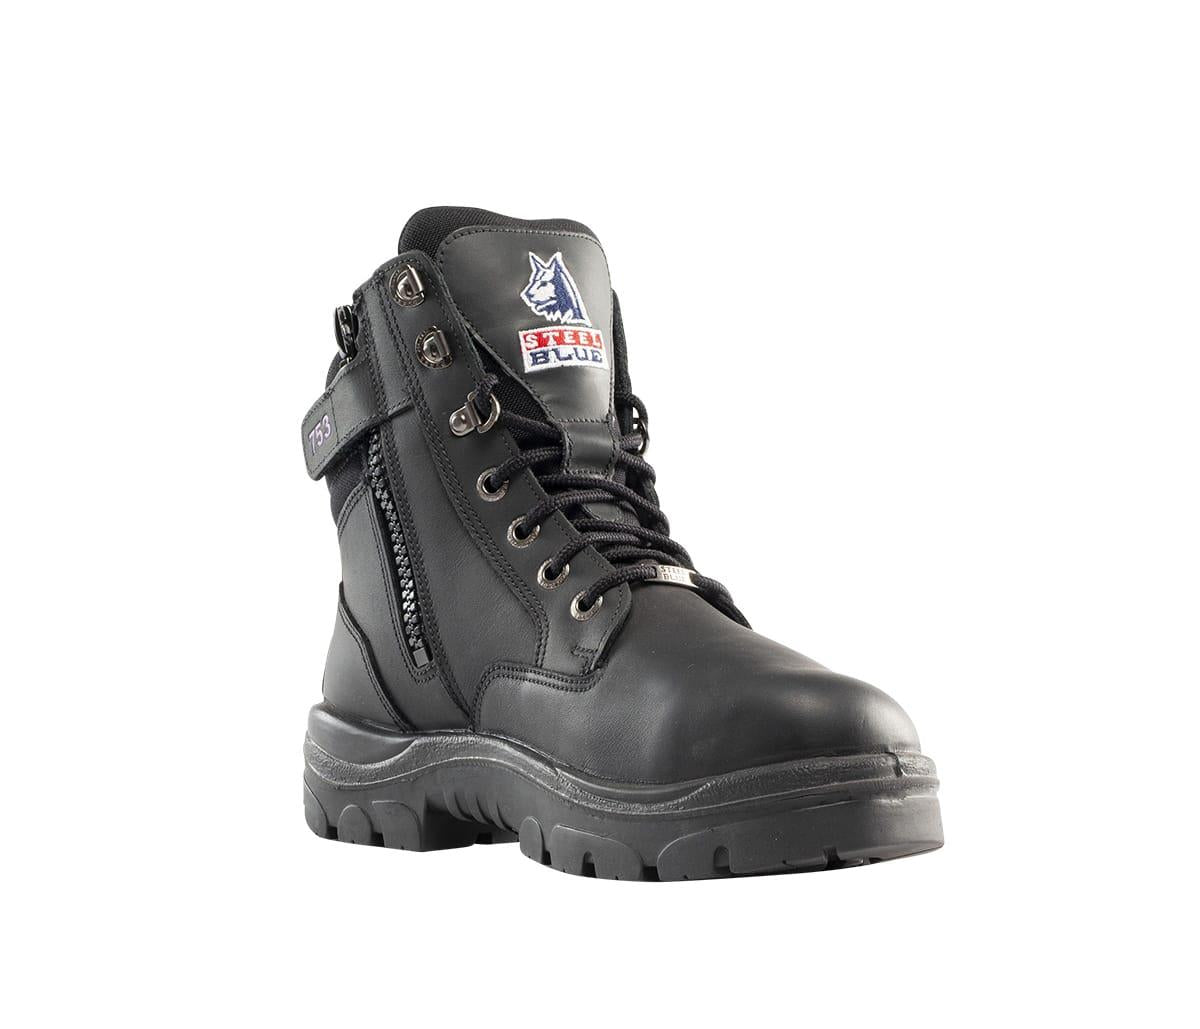 Steel Blue Southern Cross zip metatarsal S3 black ladies steel toe/midsole safety work boot #592753